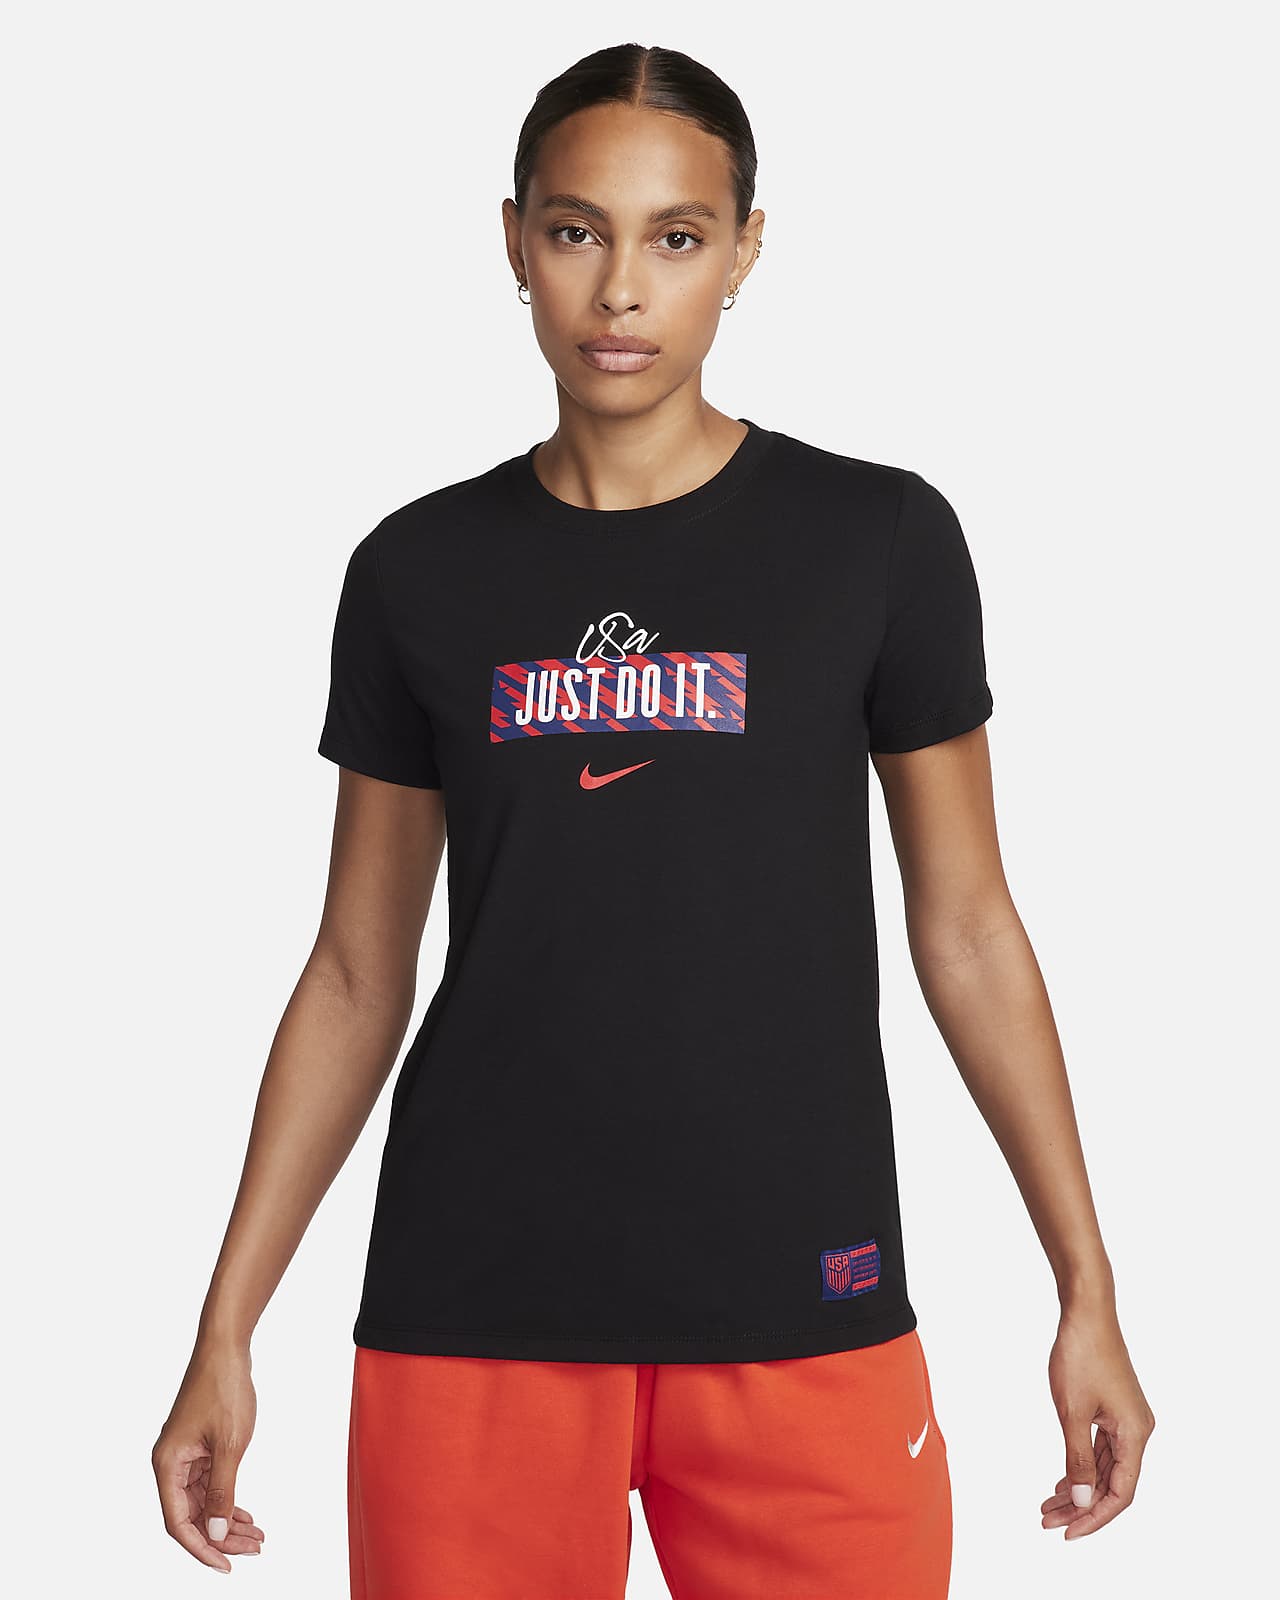 U.S. Women's Nike Soccer T-Shirt